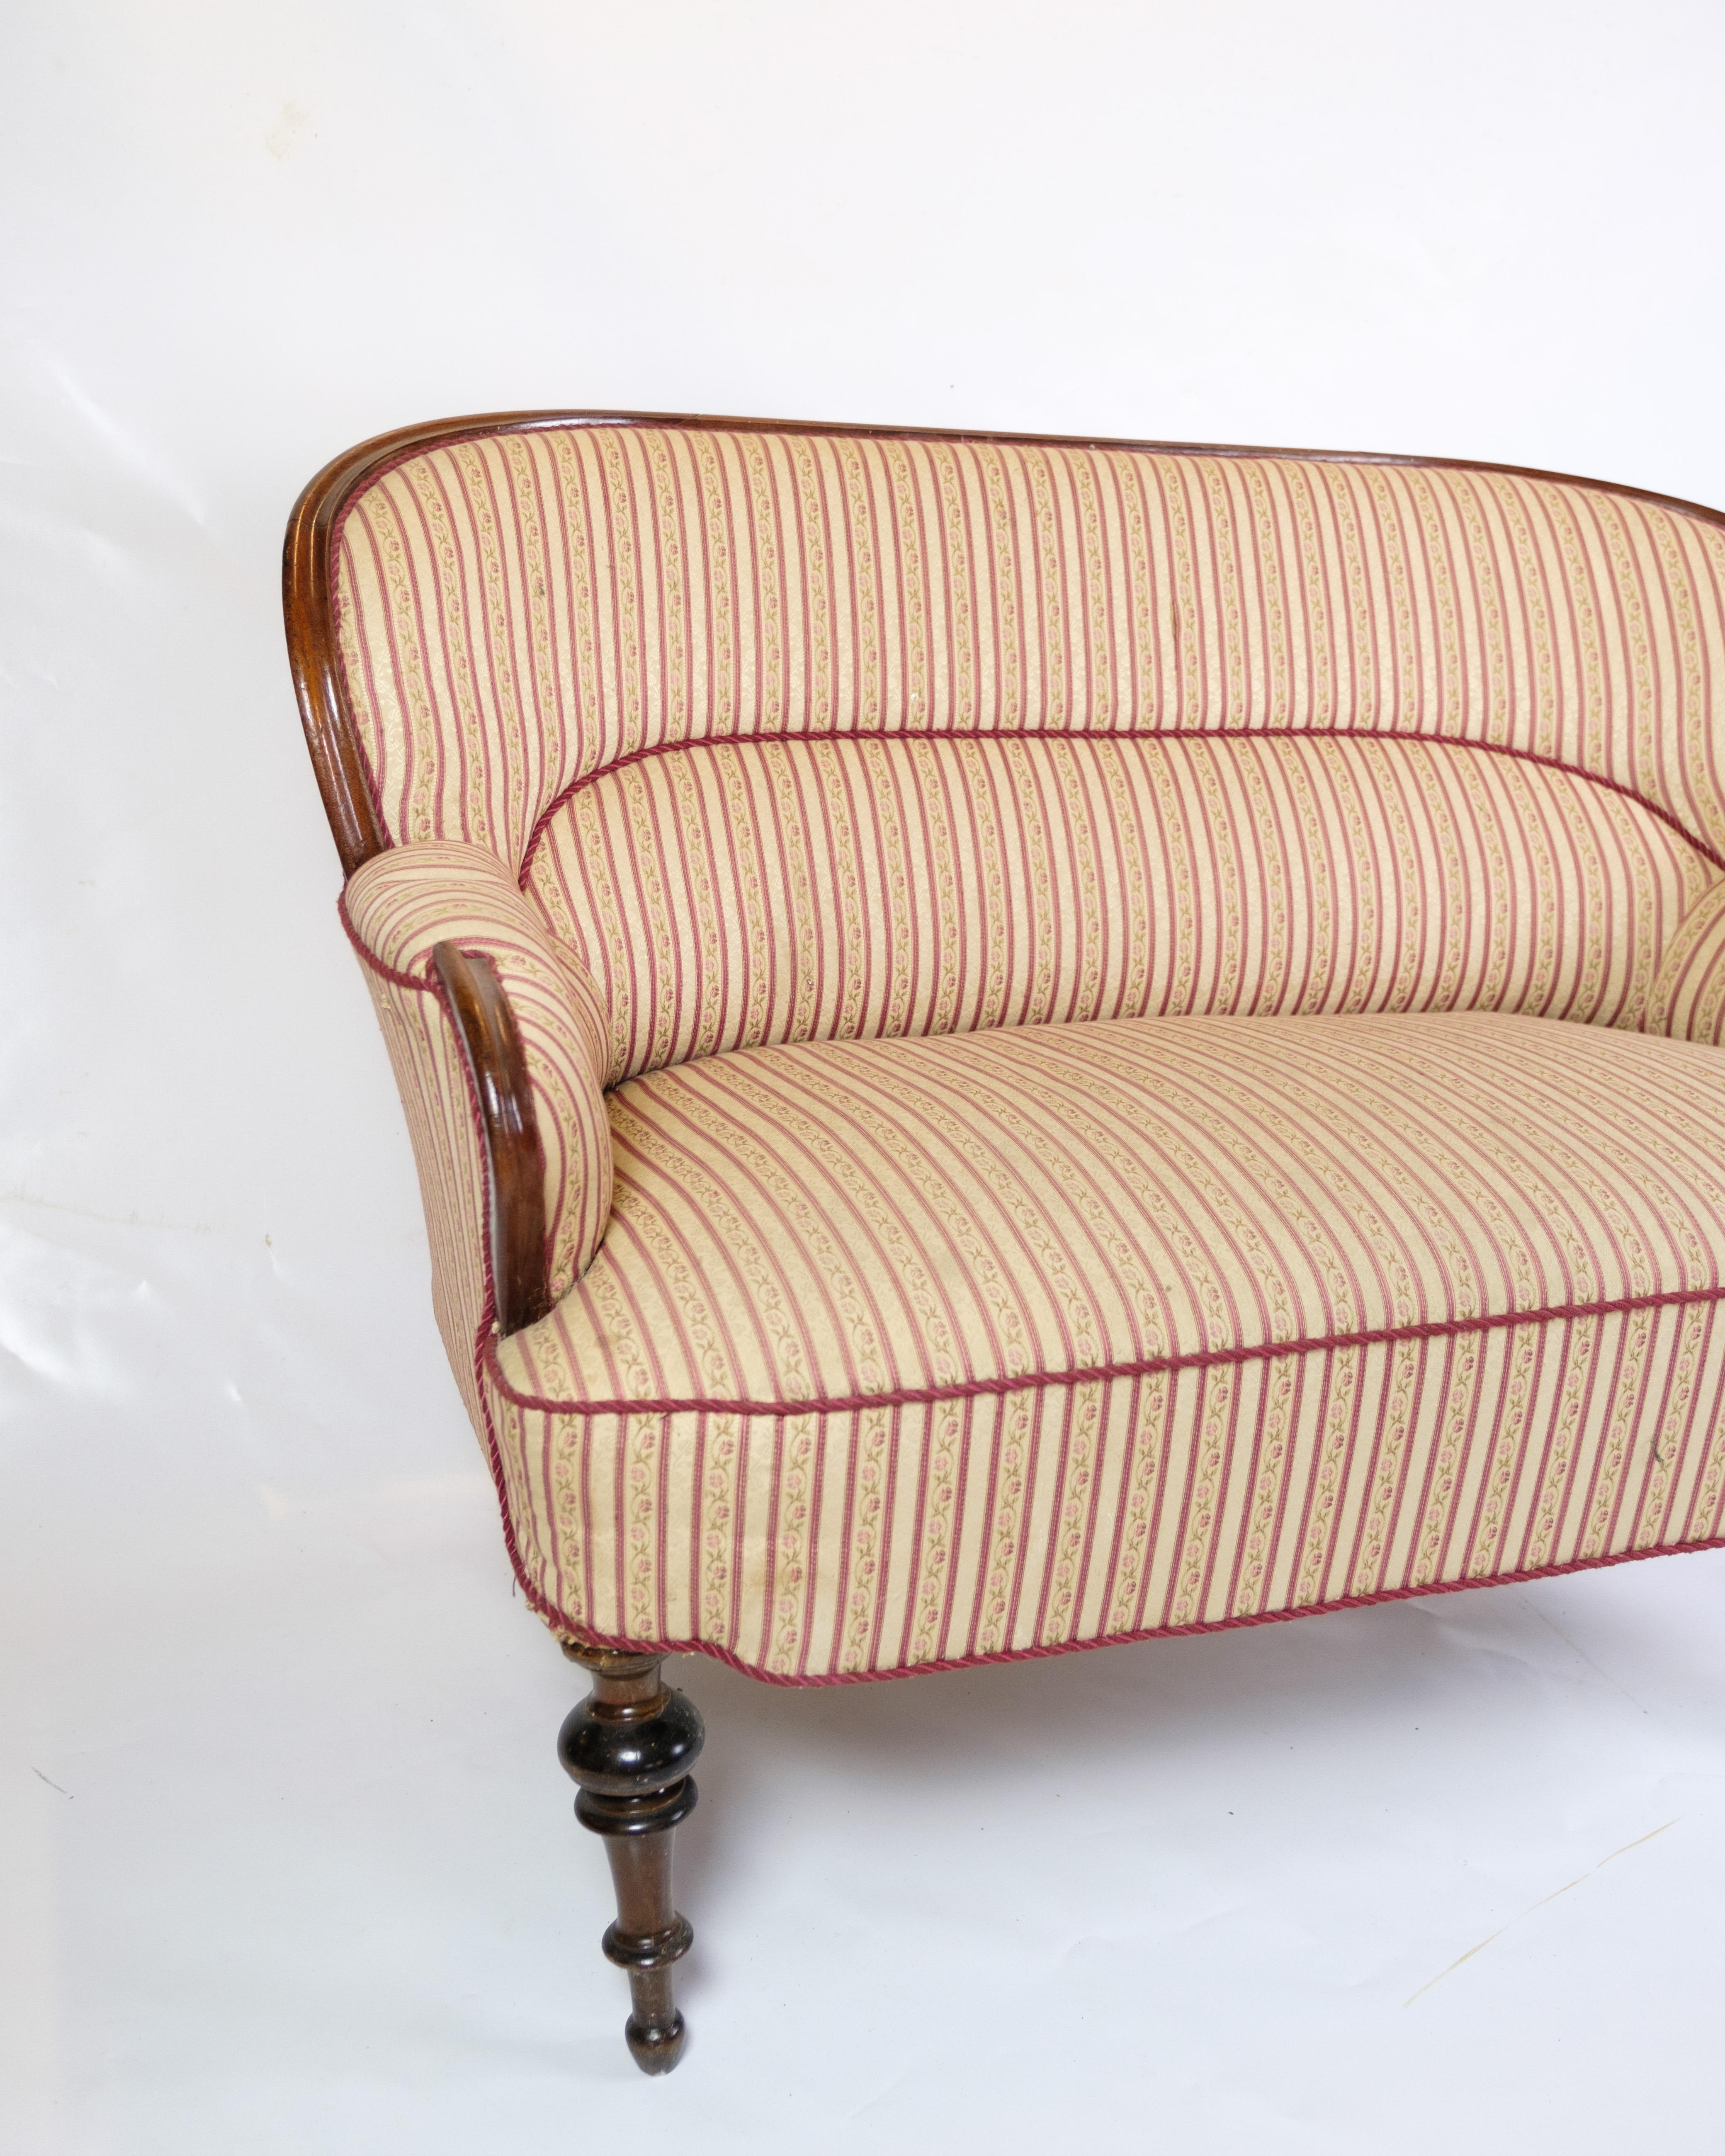 Dieses antike Zweisitzer-Sofa von ca. 1890 ist ein schönes Beispiel für zeitgenössische Handwerkskunst und Eleganz. Das aus Mahagoniholz gefertigte Sofa strahlt einen zeitlosen Charme und Beständigkeit aus. Mit einem schön gemusterten Stoff